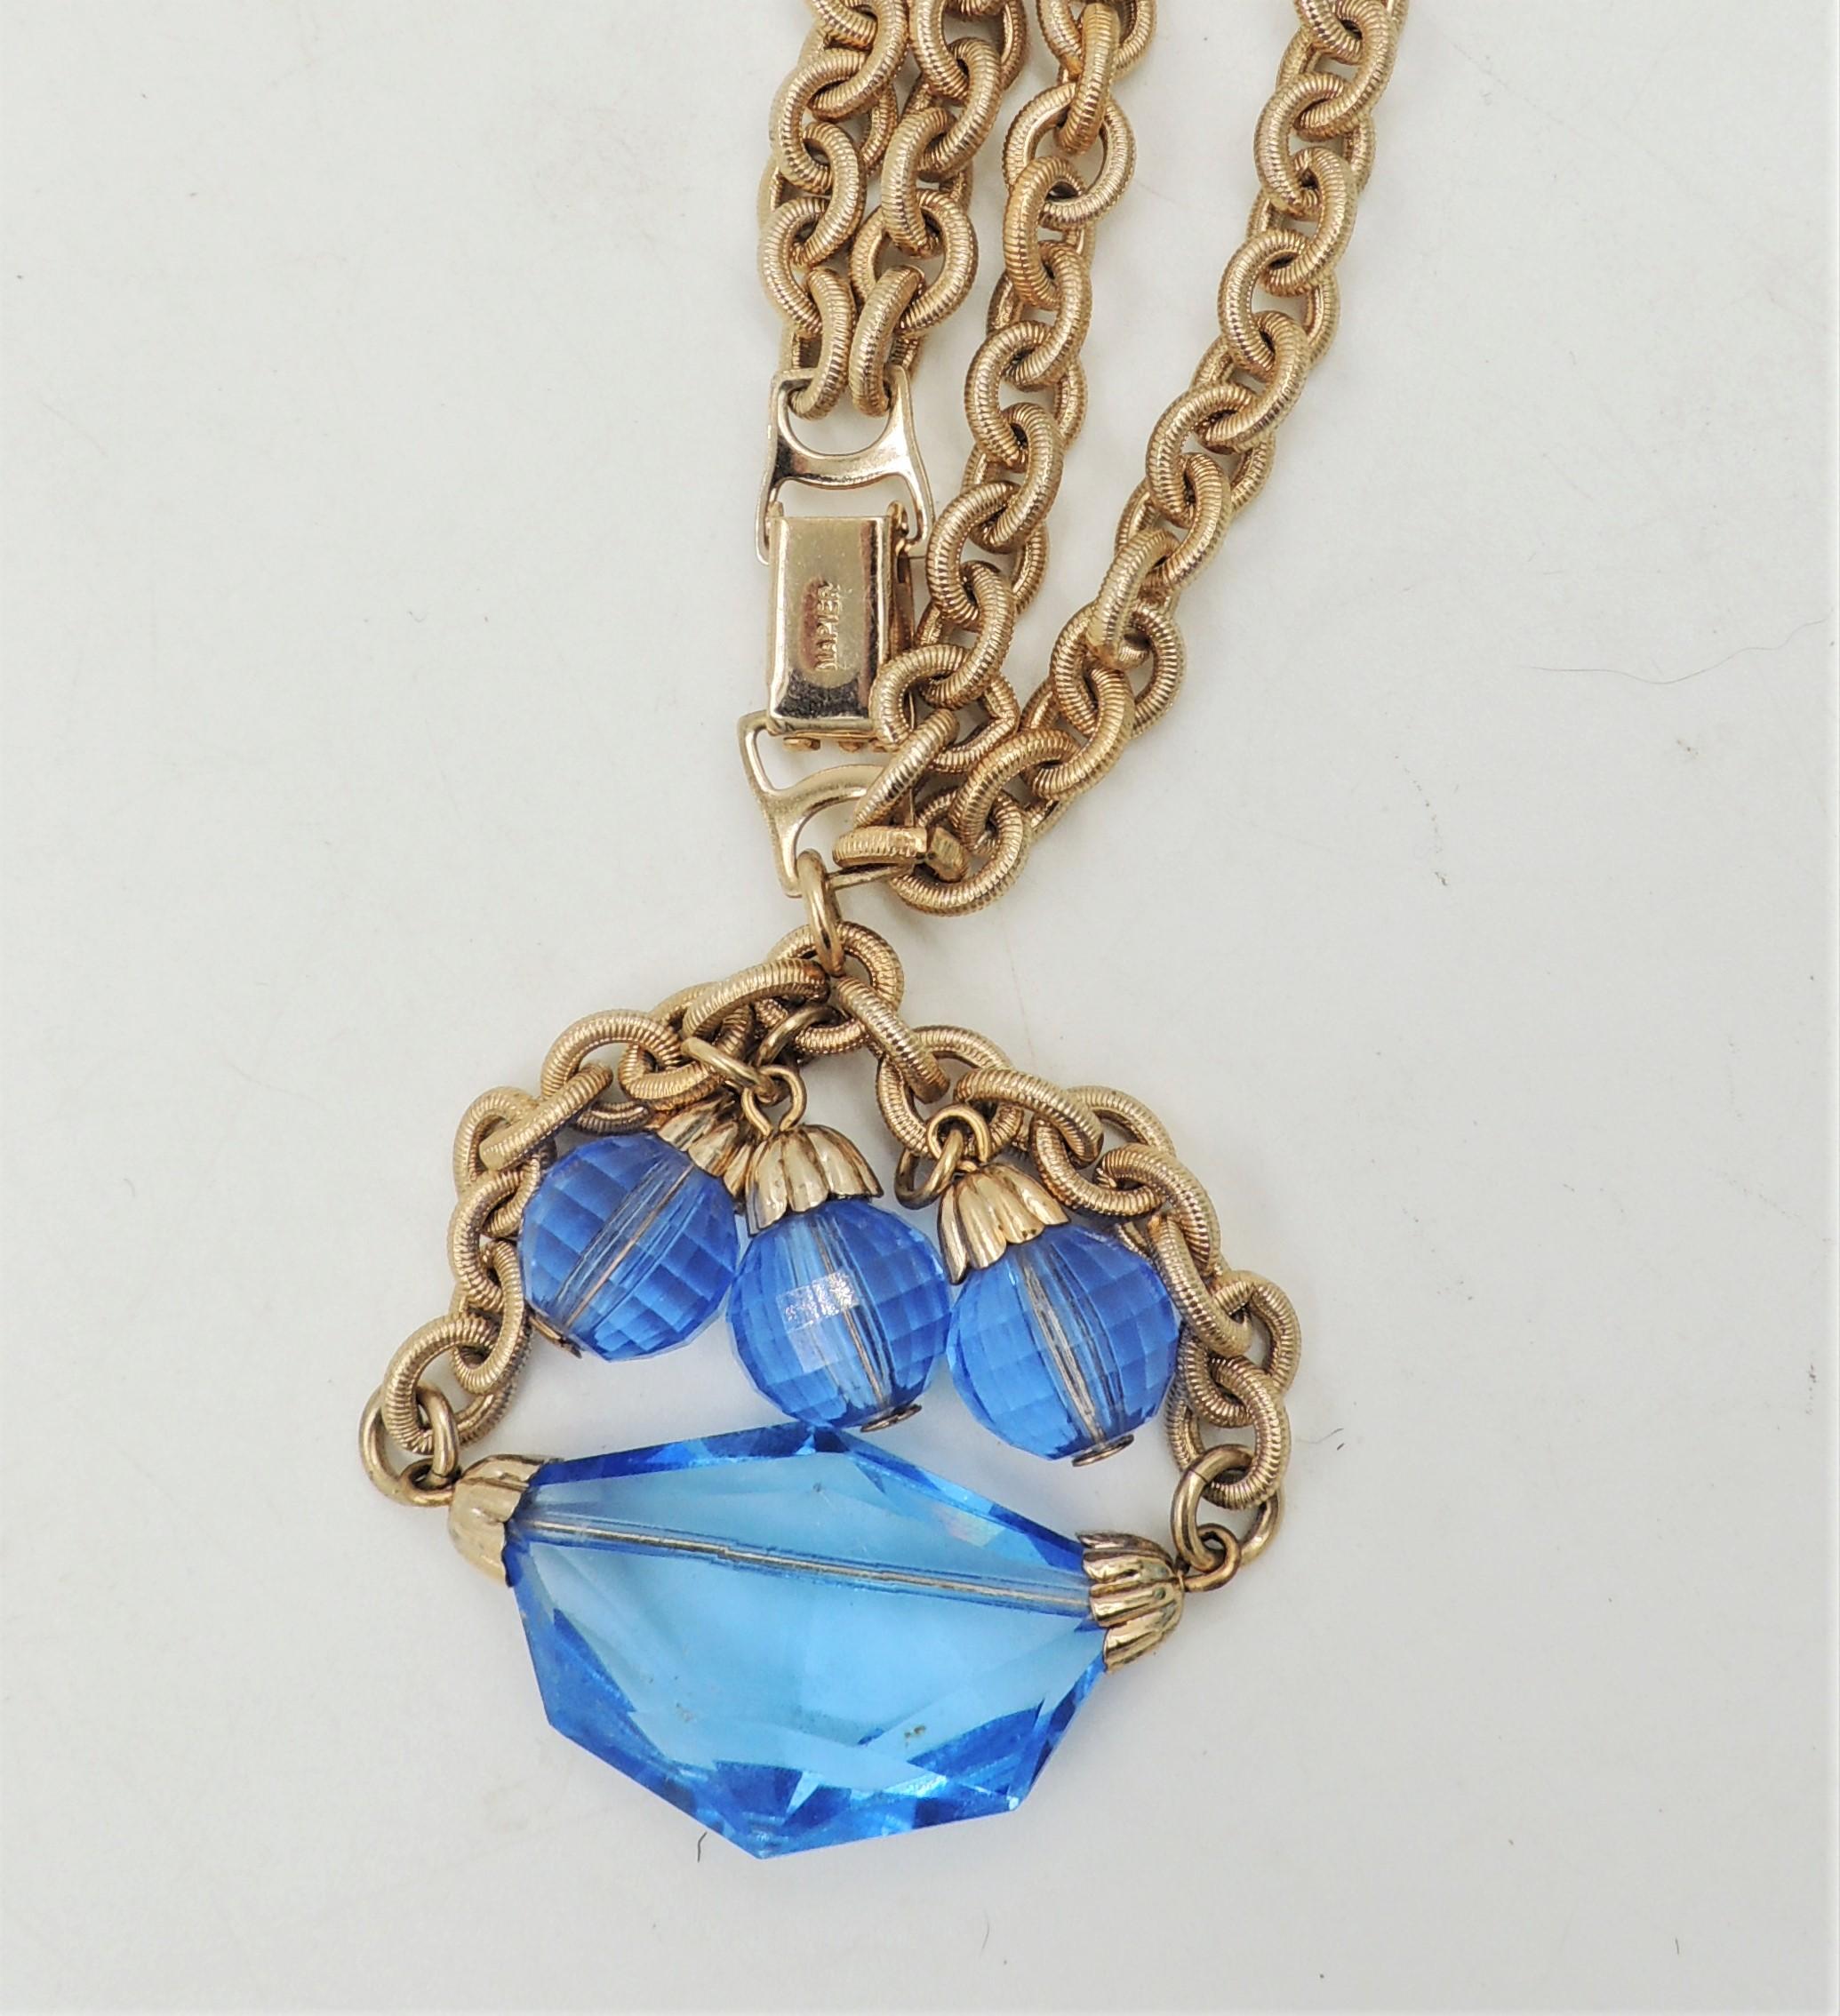 Modern Vintage 1950s Signed Napier Goldtone & Blue Glass Charm Bracelet